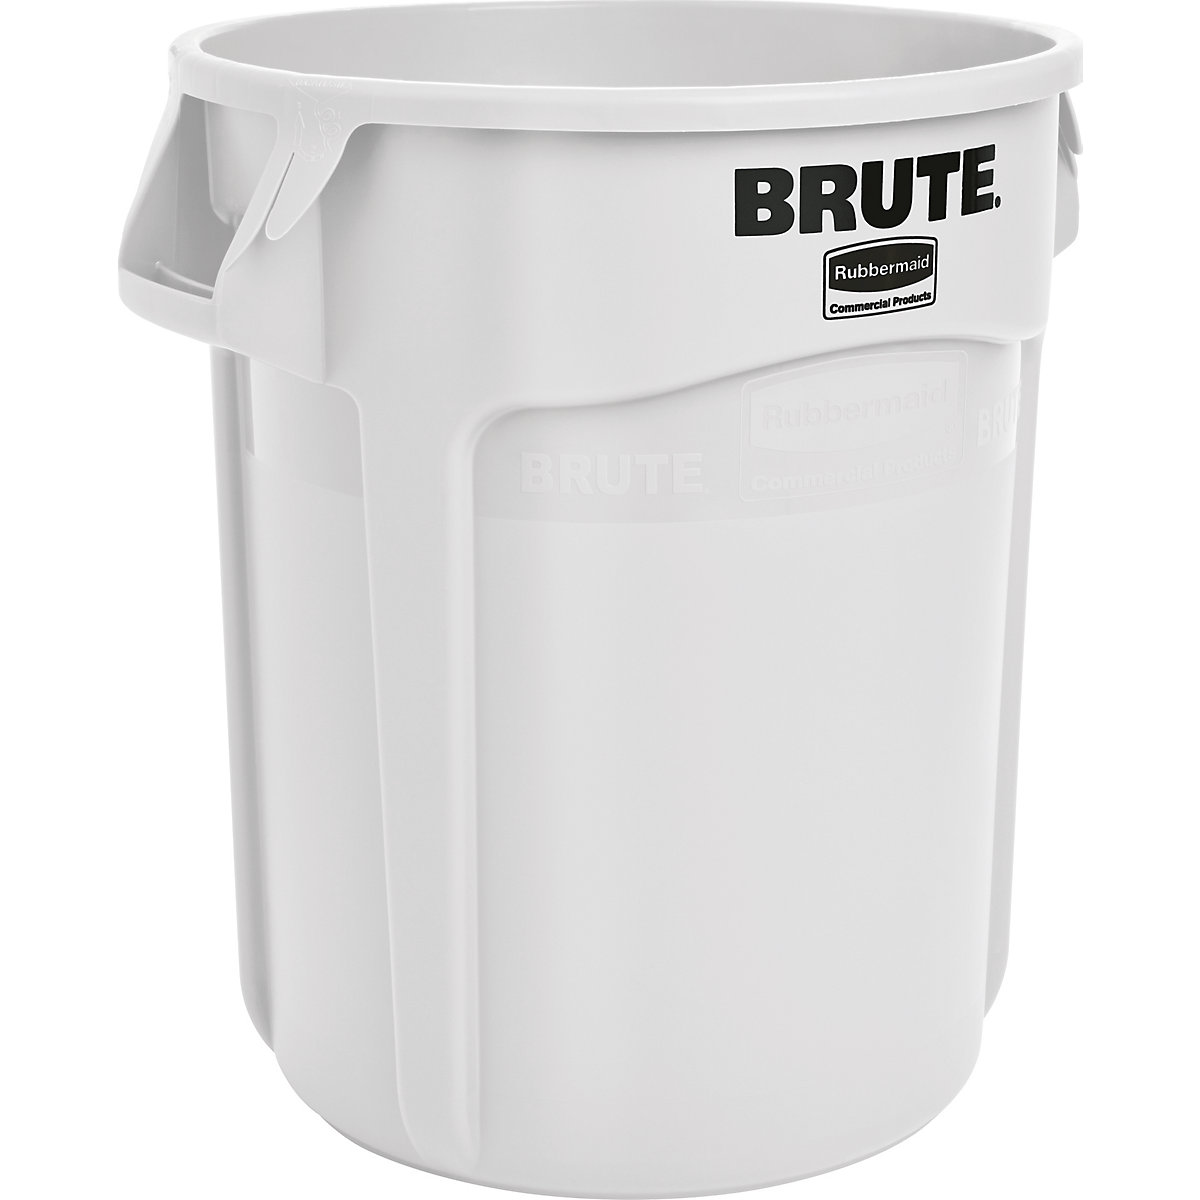 Univerzální kontejner BRUTE®, kulatý – Rubbermaid